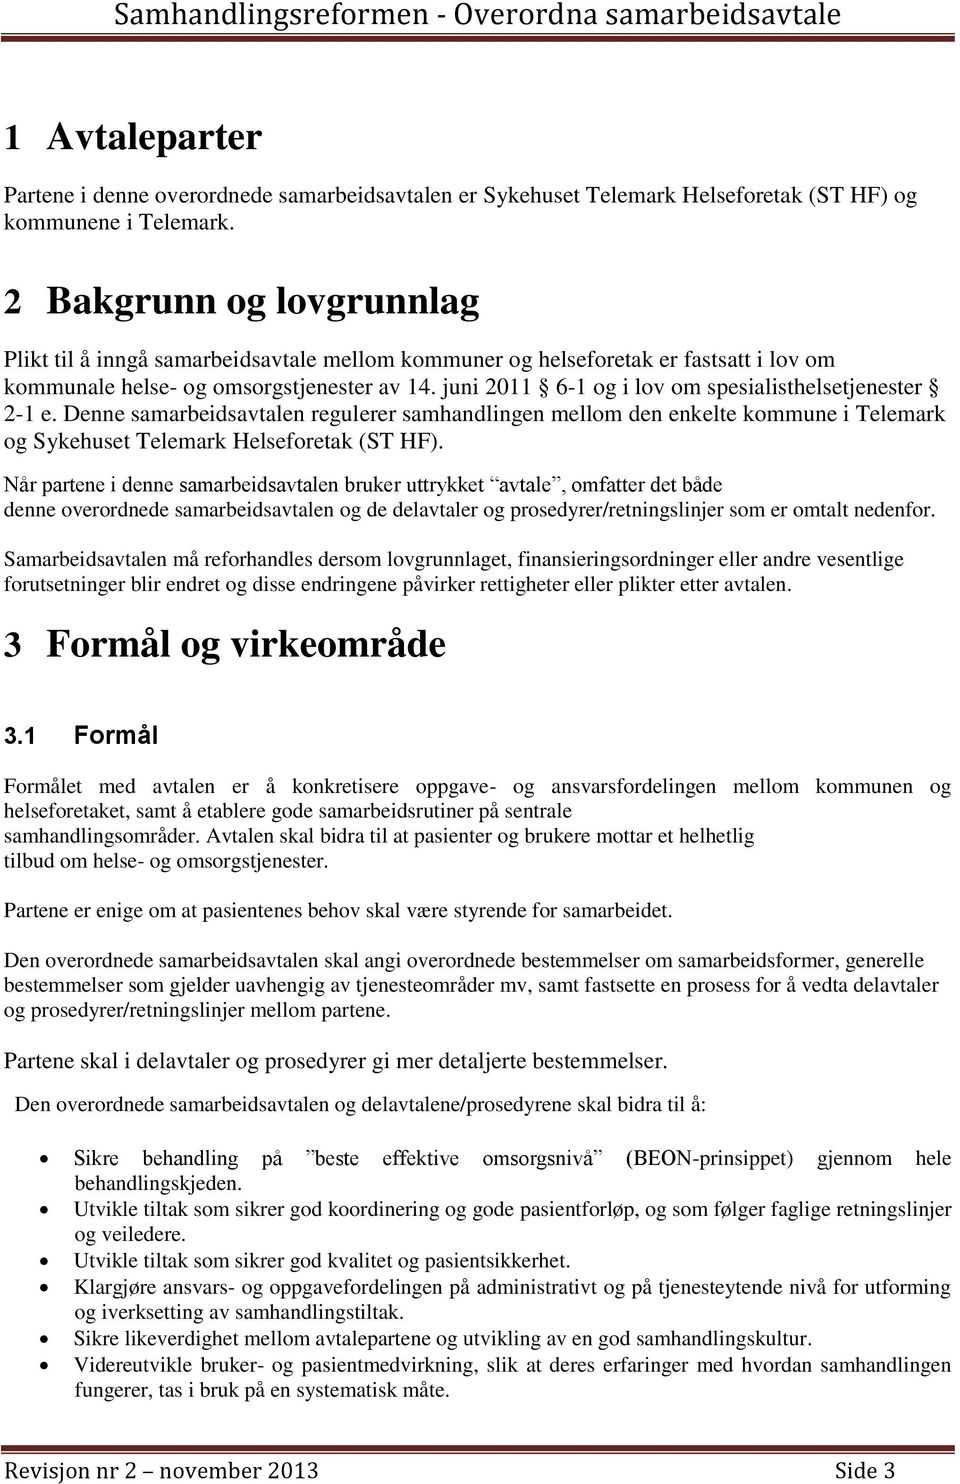 juni 2011 6-1 og i lov om spesialisthelsetjenester 2-1 e. Denne samarbeidsavtalen regulerer samhandlingen mellom den enkelte kommune i Telemark og Sykehuset Telemark Helseforetak (ST HF).